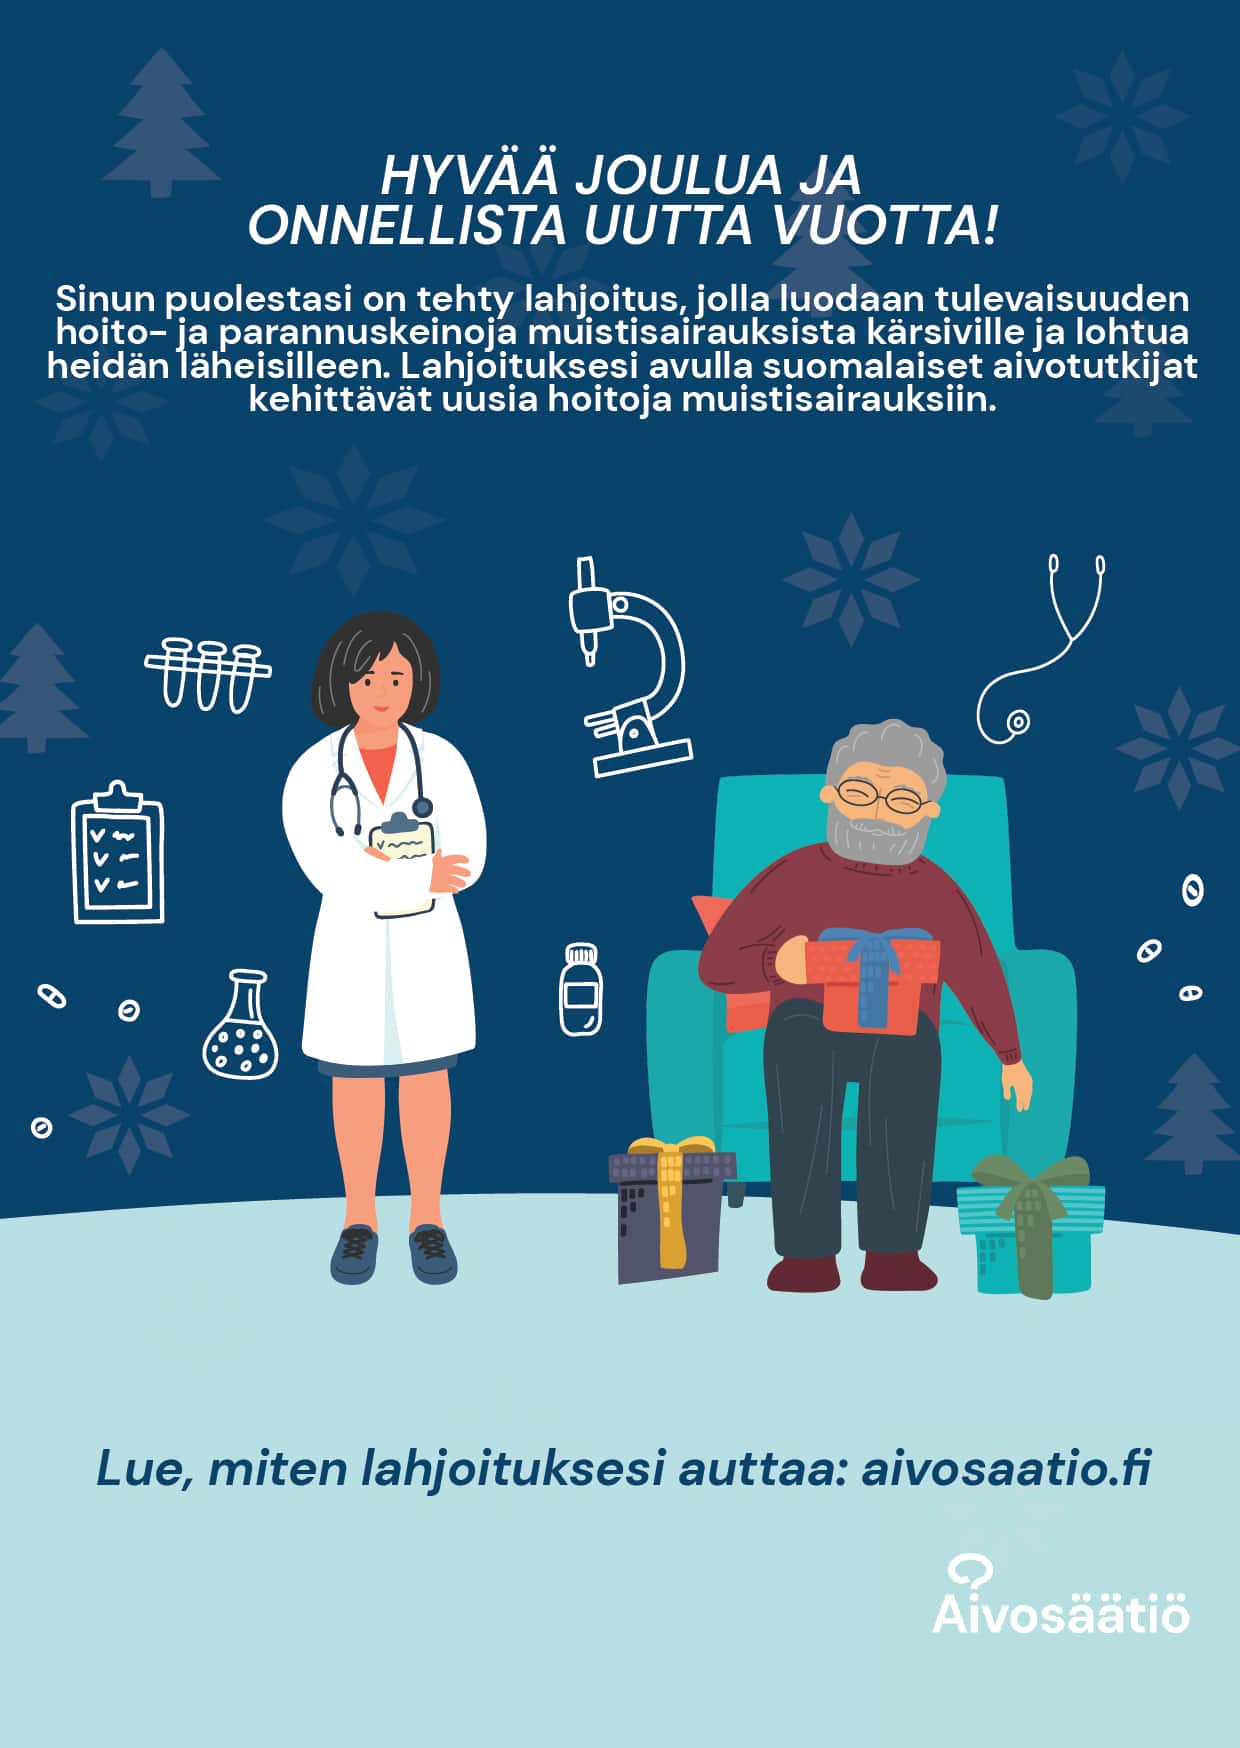 Kuvassa lääkäri ja vanha mies nojatuolissa. Kuvan päällä teksti "Hyvää joulua ja onnellista uutta vuotta! Sinun puolestasi on tehty lahjoitus, jolla luodaan tulevaisuuden hoito- ja parannuskeinoja muistisairauksista kärsiville ja lohtua heidän läheisilleen. Lahjoituksesi avulla suomalaiset aivotutkijat kehittävät uusia hoitoja muistisairauksiin. Lue, miten lahjoituksesi auttaa: aivosaatio.fi